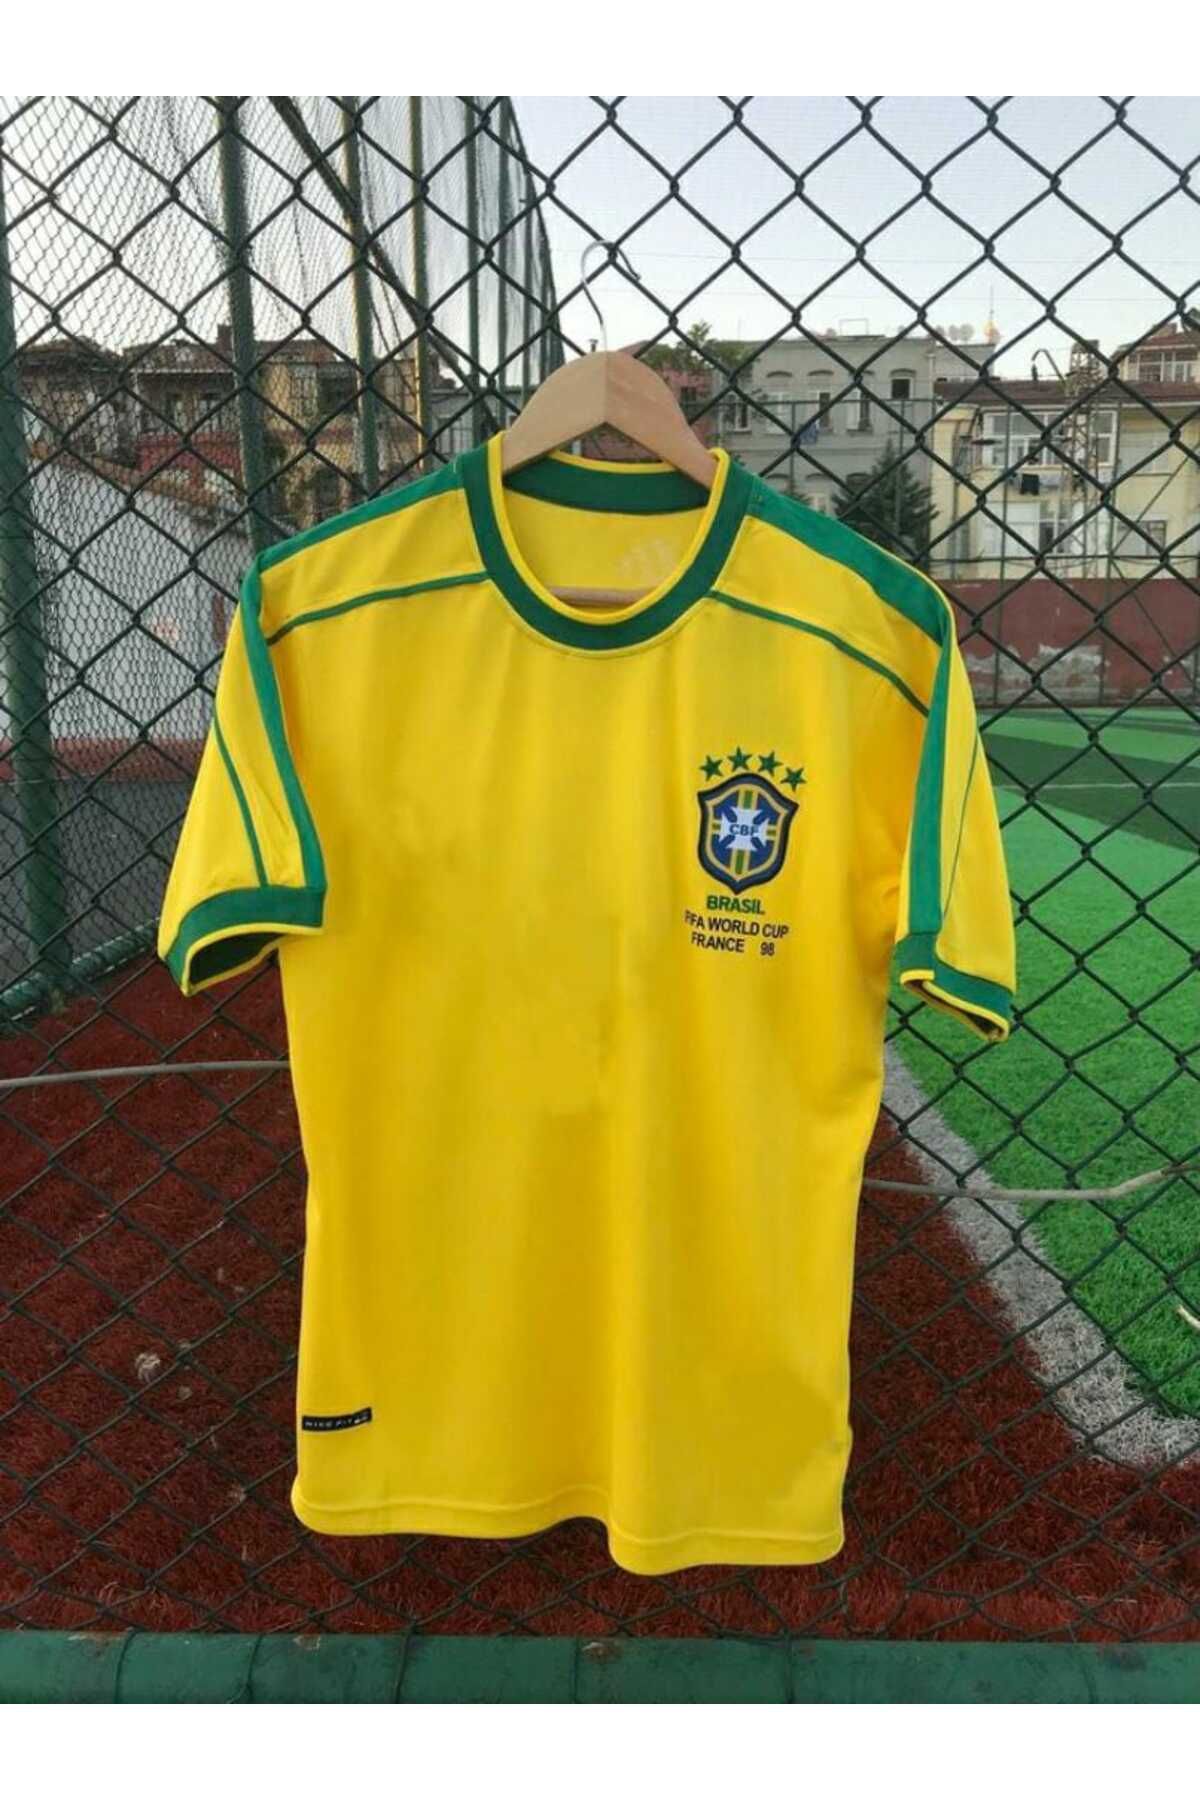 BYSPORTAKUS Brezilya Milli Takımı 98 Dünya Kupası Kaka Leite Nostalji Forması